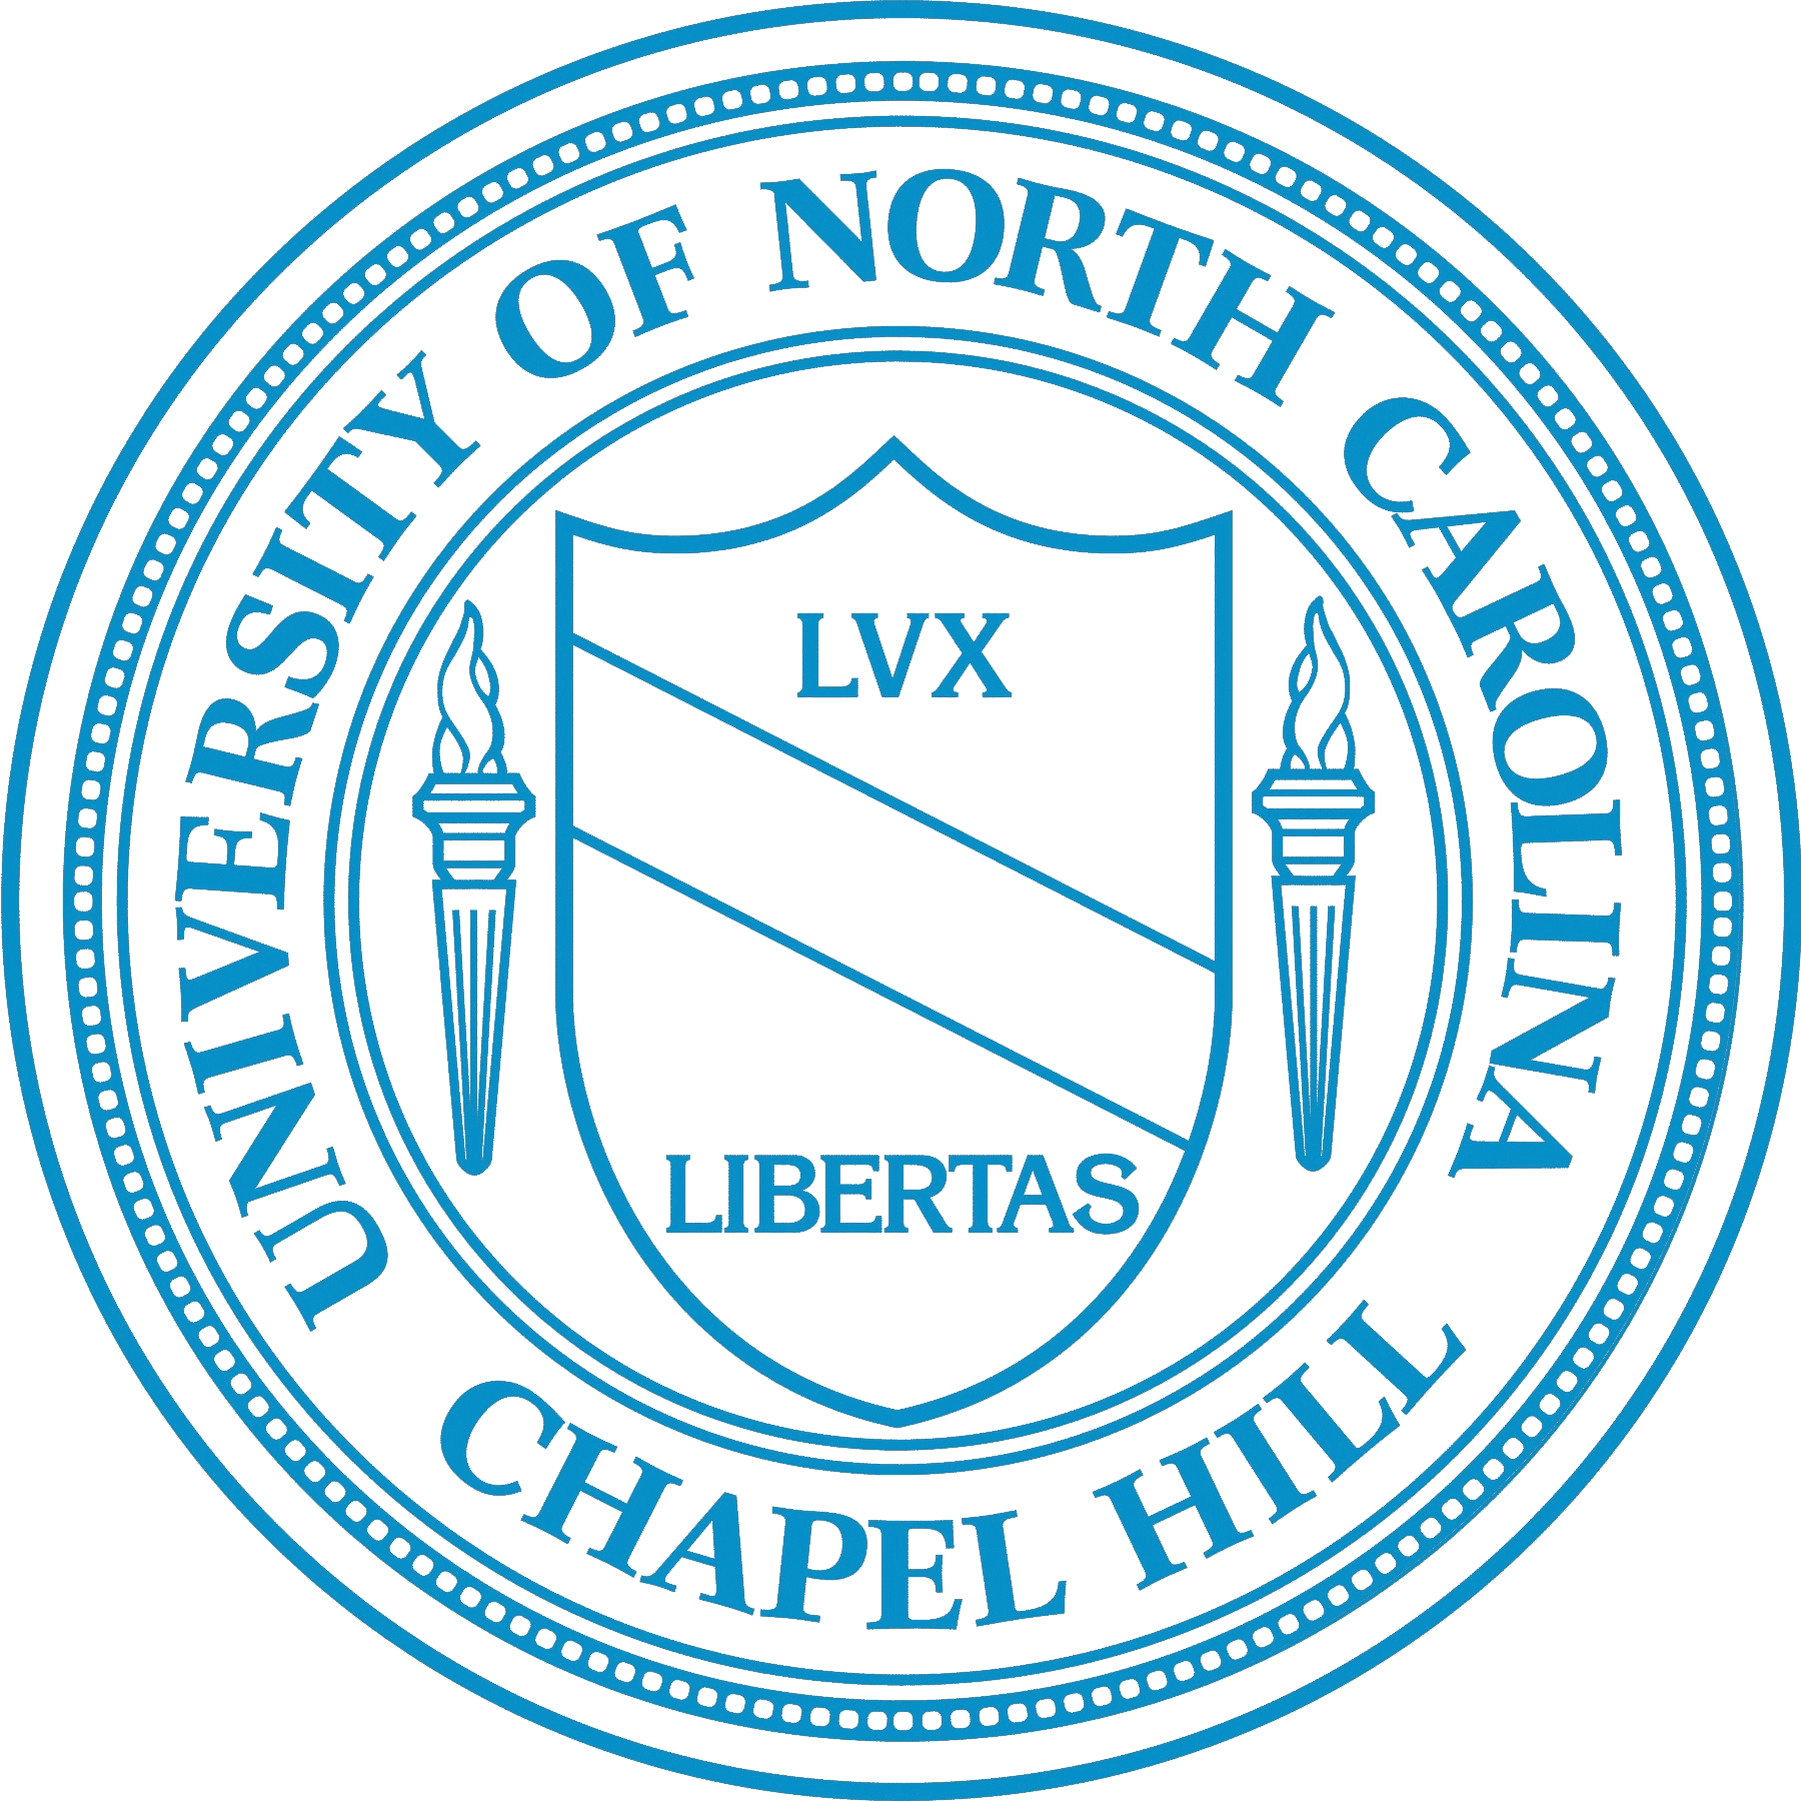 UNC Logo and Seals [University of North Carolina at Chapel Hill   unc.edu] png